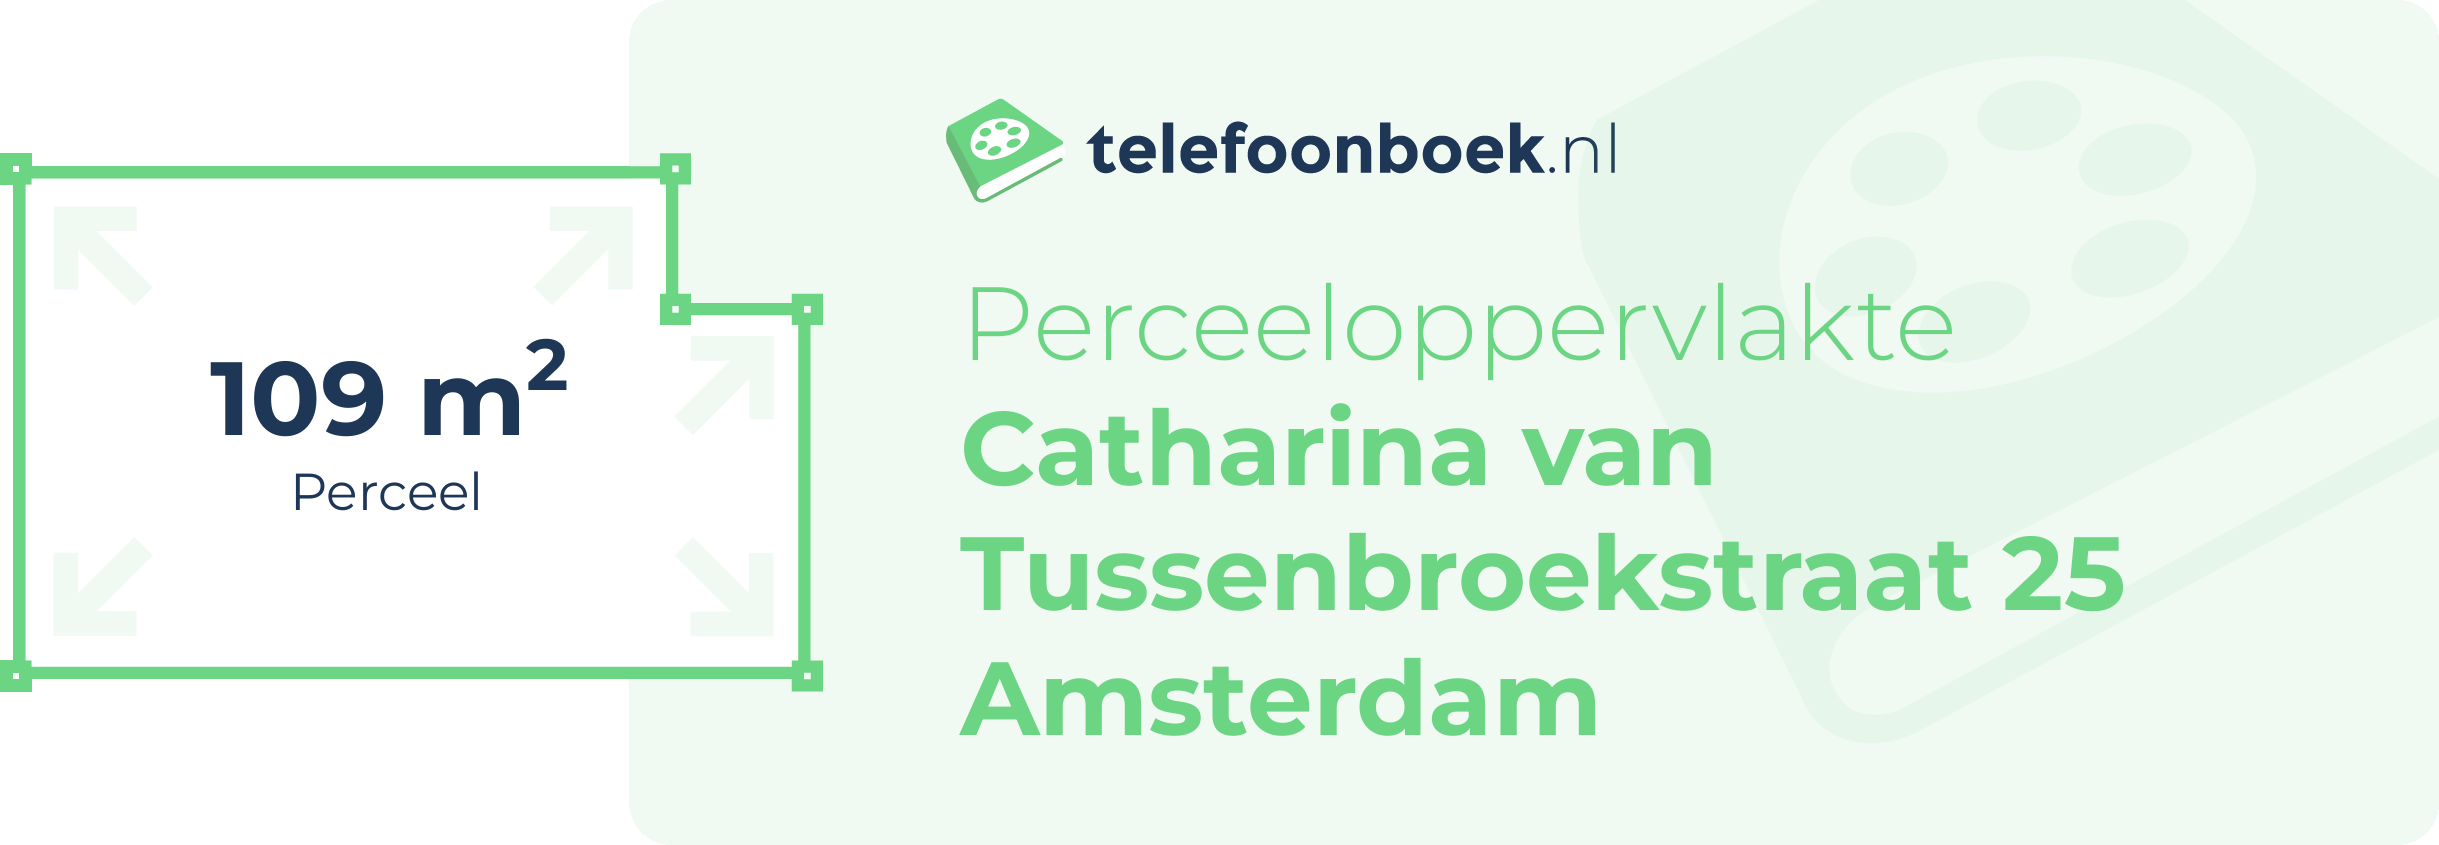 Perceeloppervlakte Catharina Van Tussenbroekstraat 25 Amsterdam